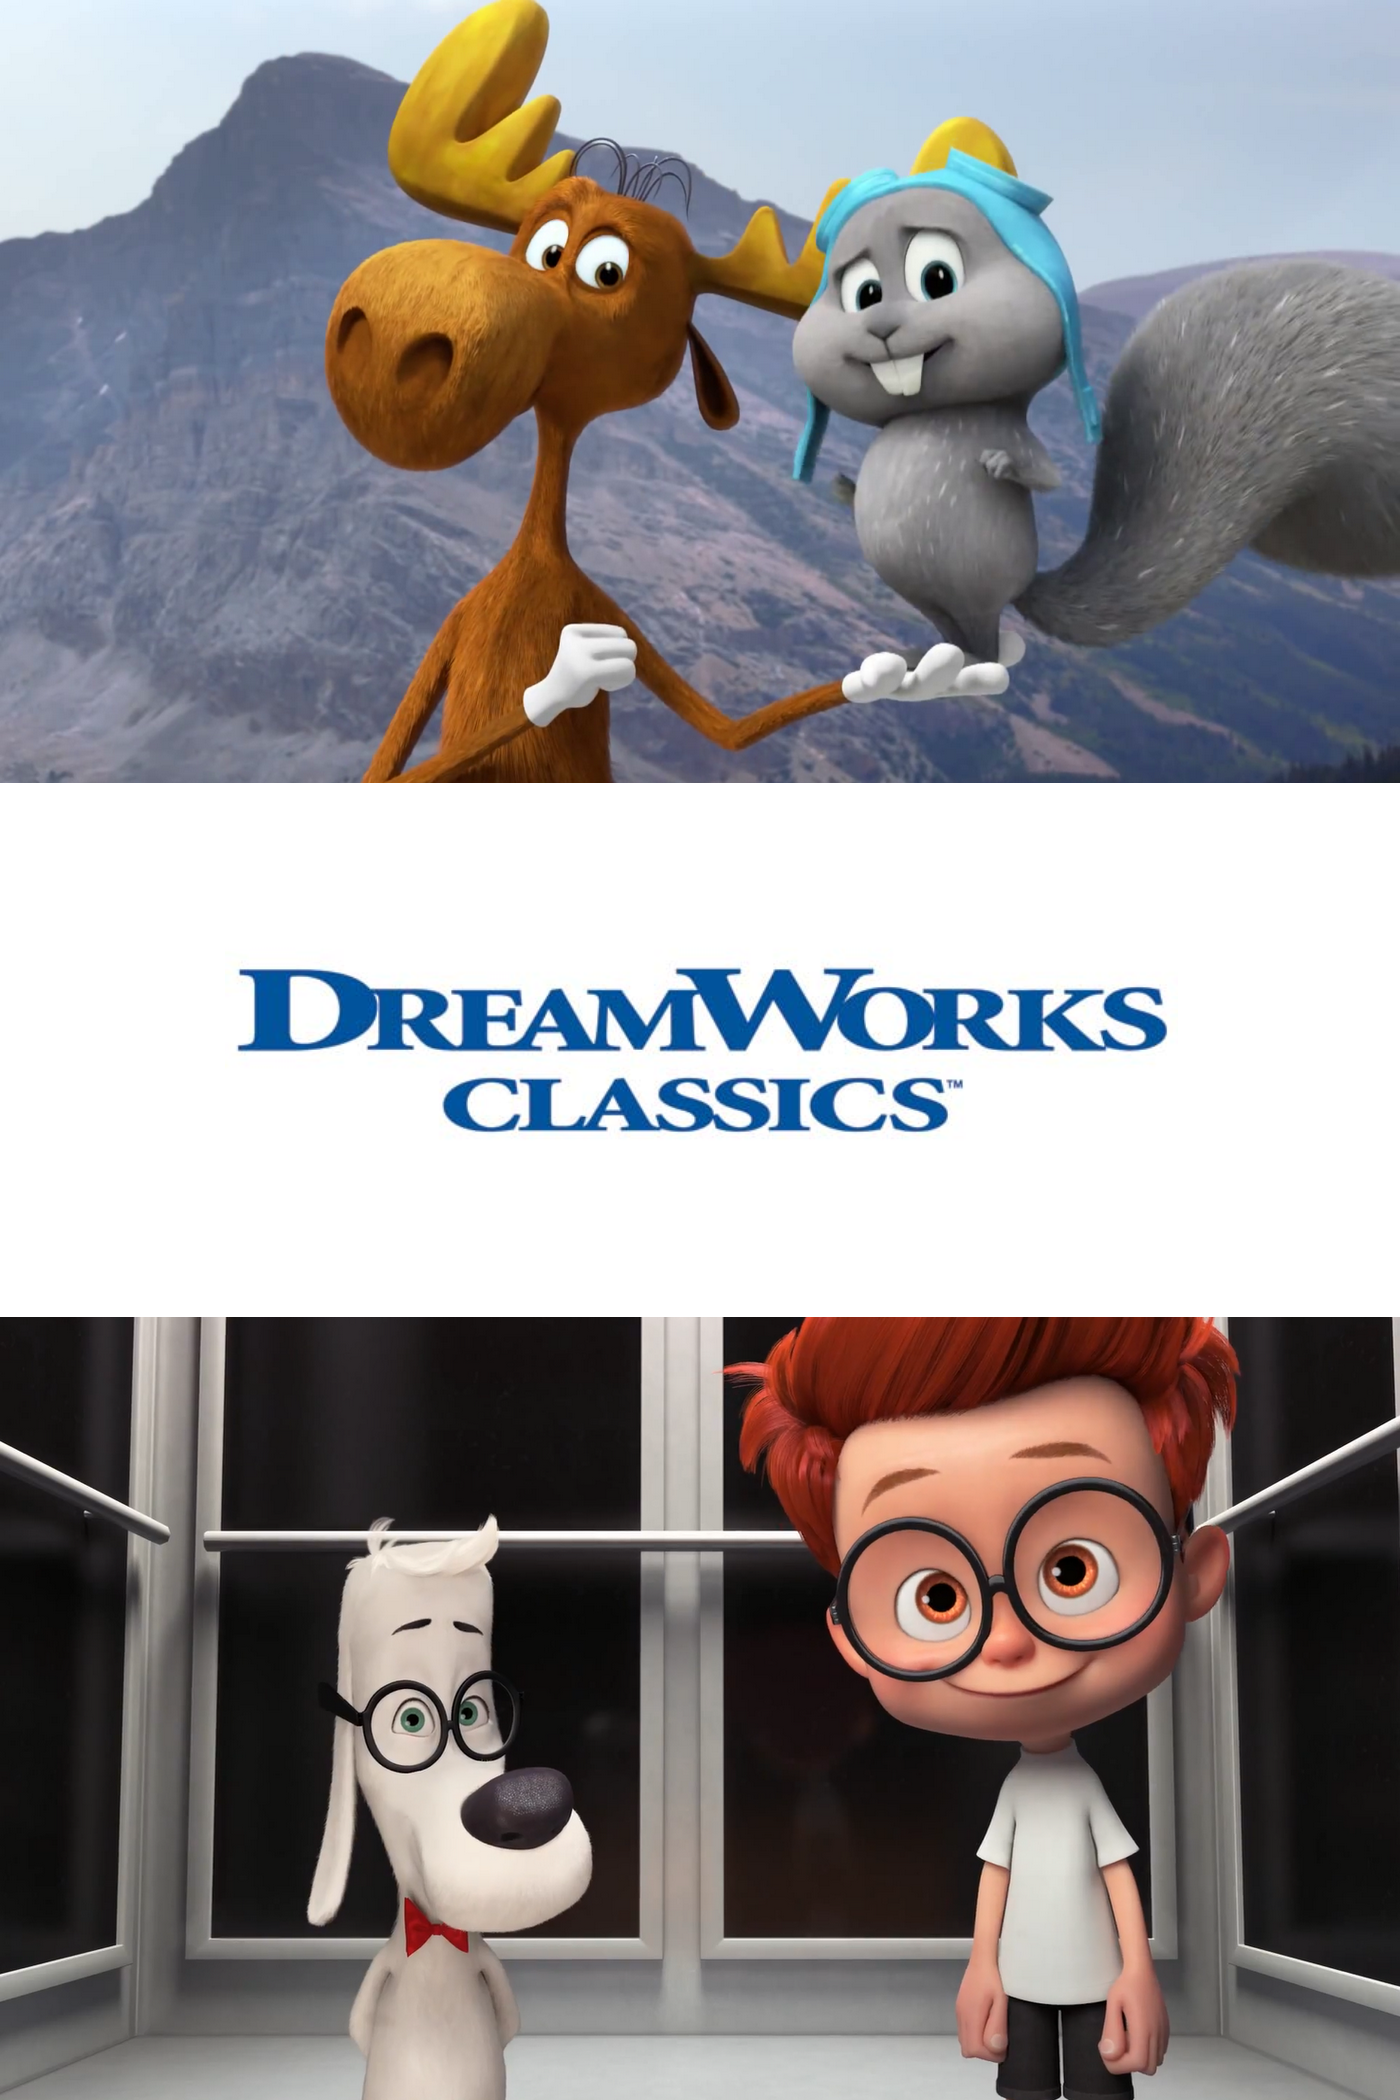 DreamWorks Classics | Dreamworks Animation Wiki | Fandom powered by Wikia